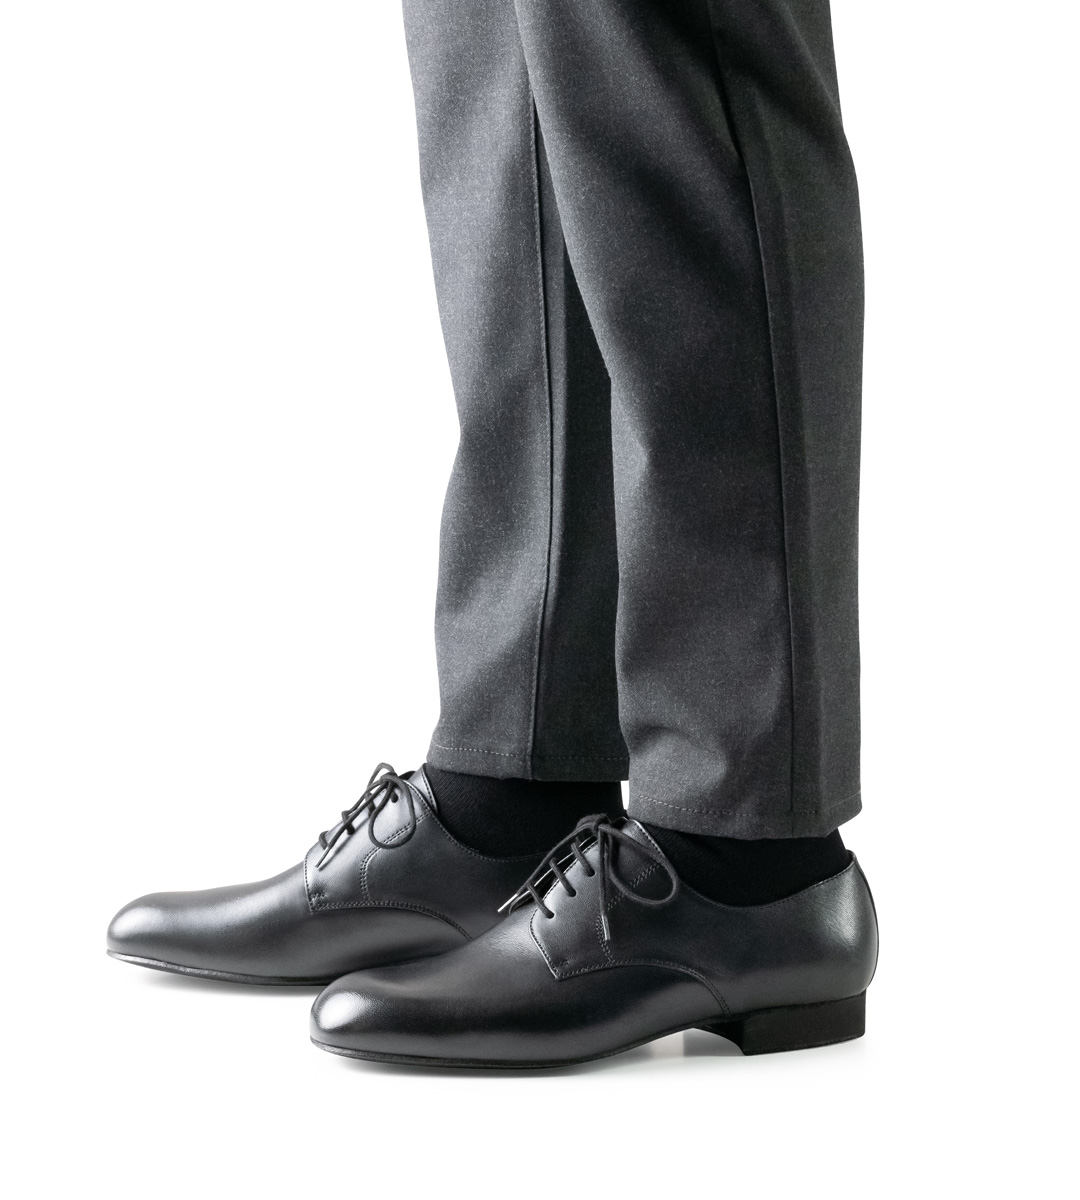 Hose in grau in Kombination mit Herrentanzschuh aus schwarzem Leder